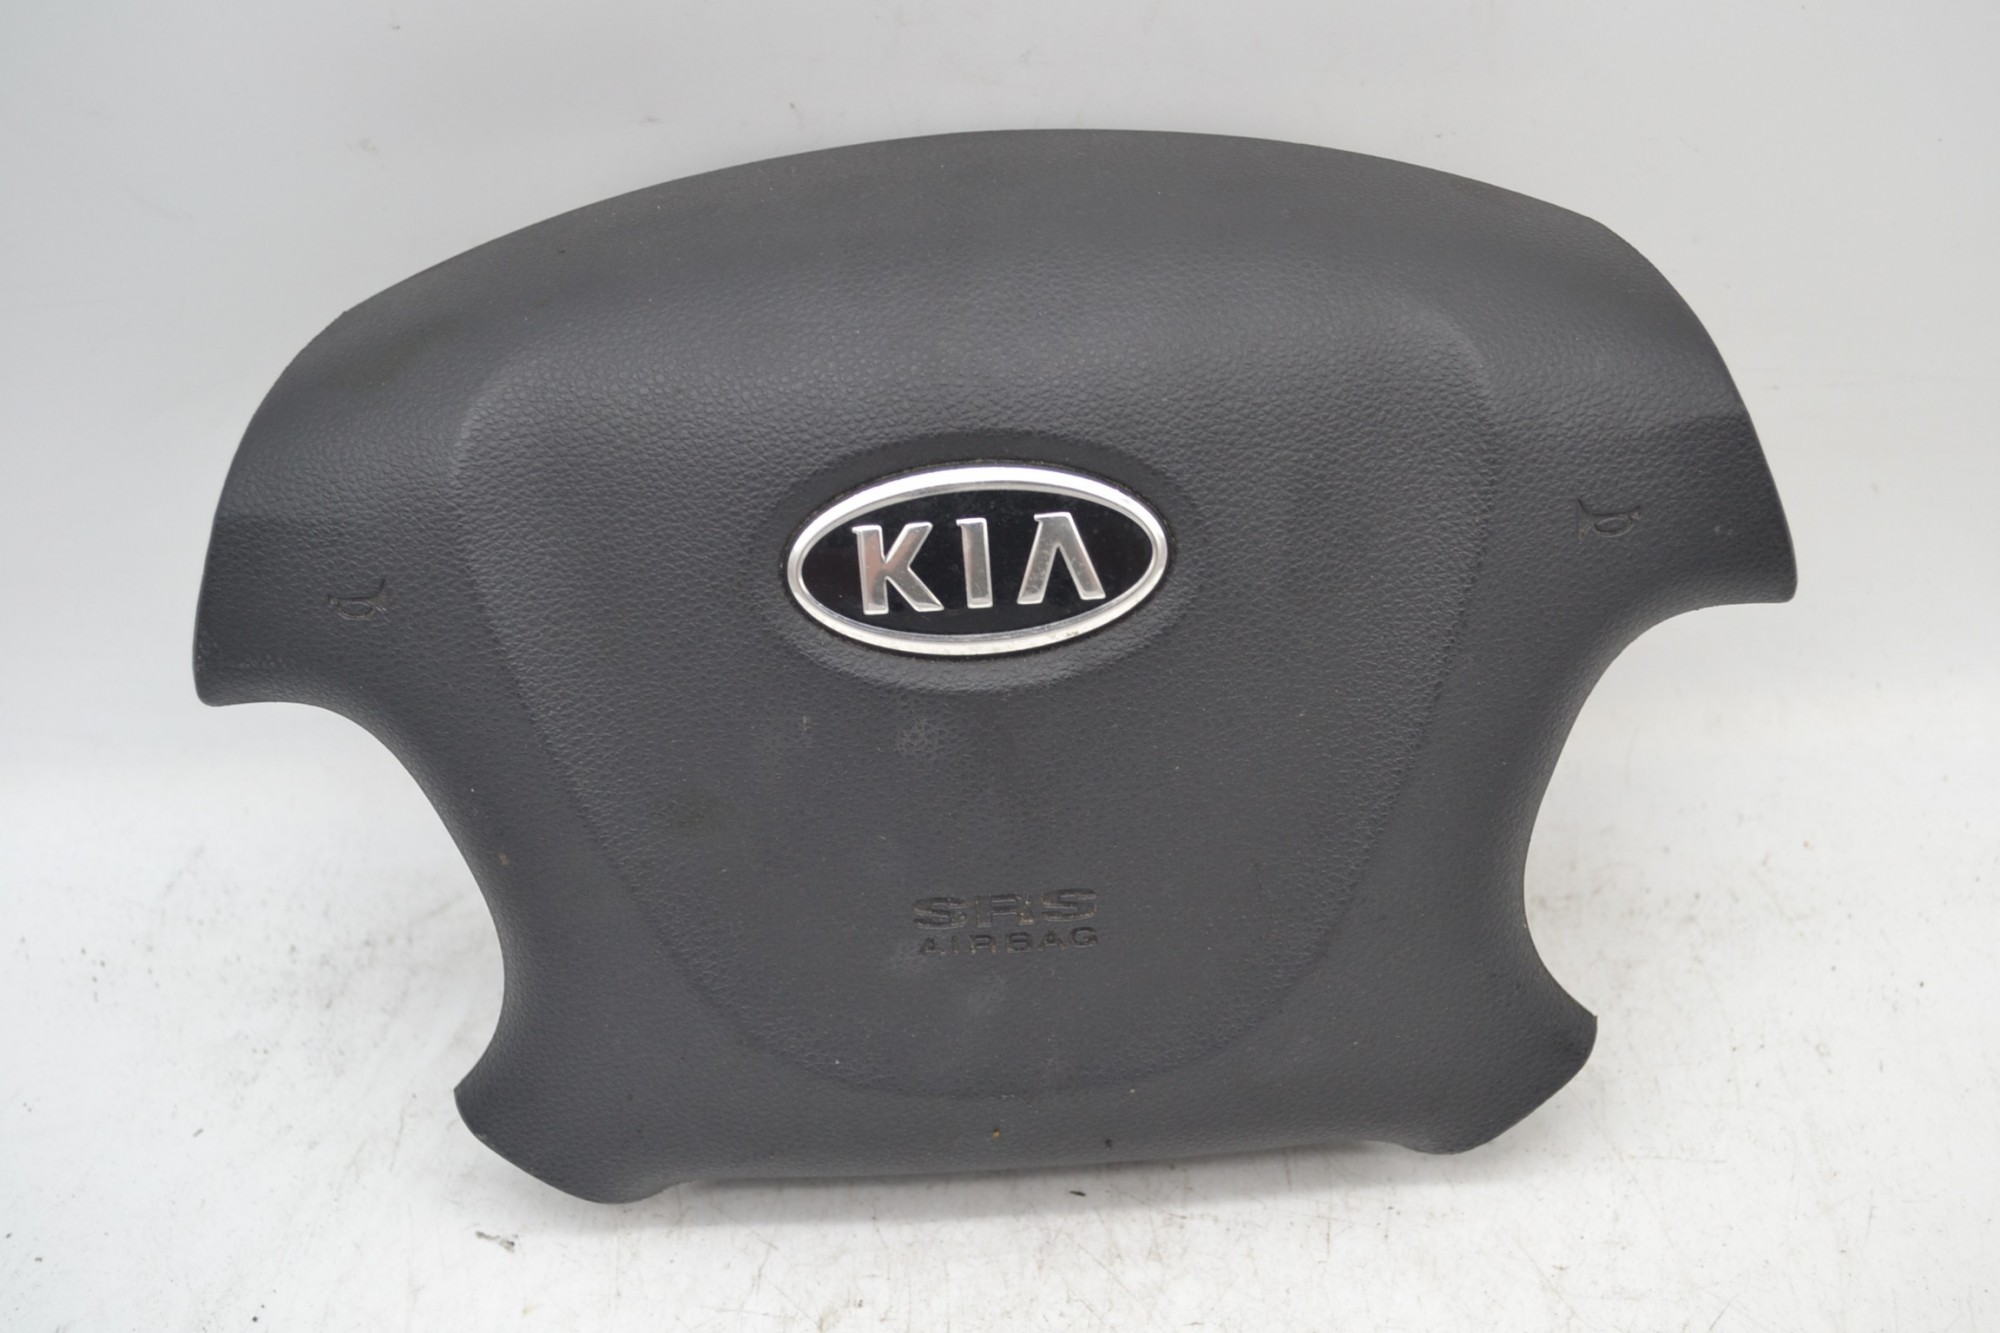 Airbag volante Kia Carnival Dal 2006 al 2014 Cod 56900-4d520va  1657284843992